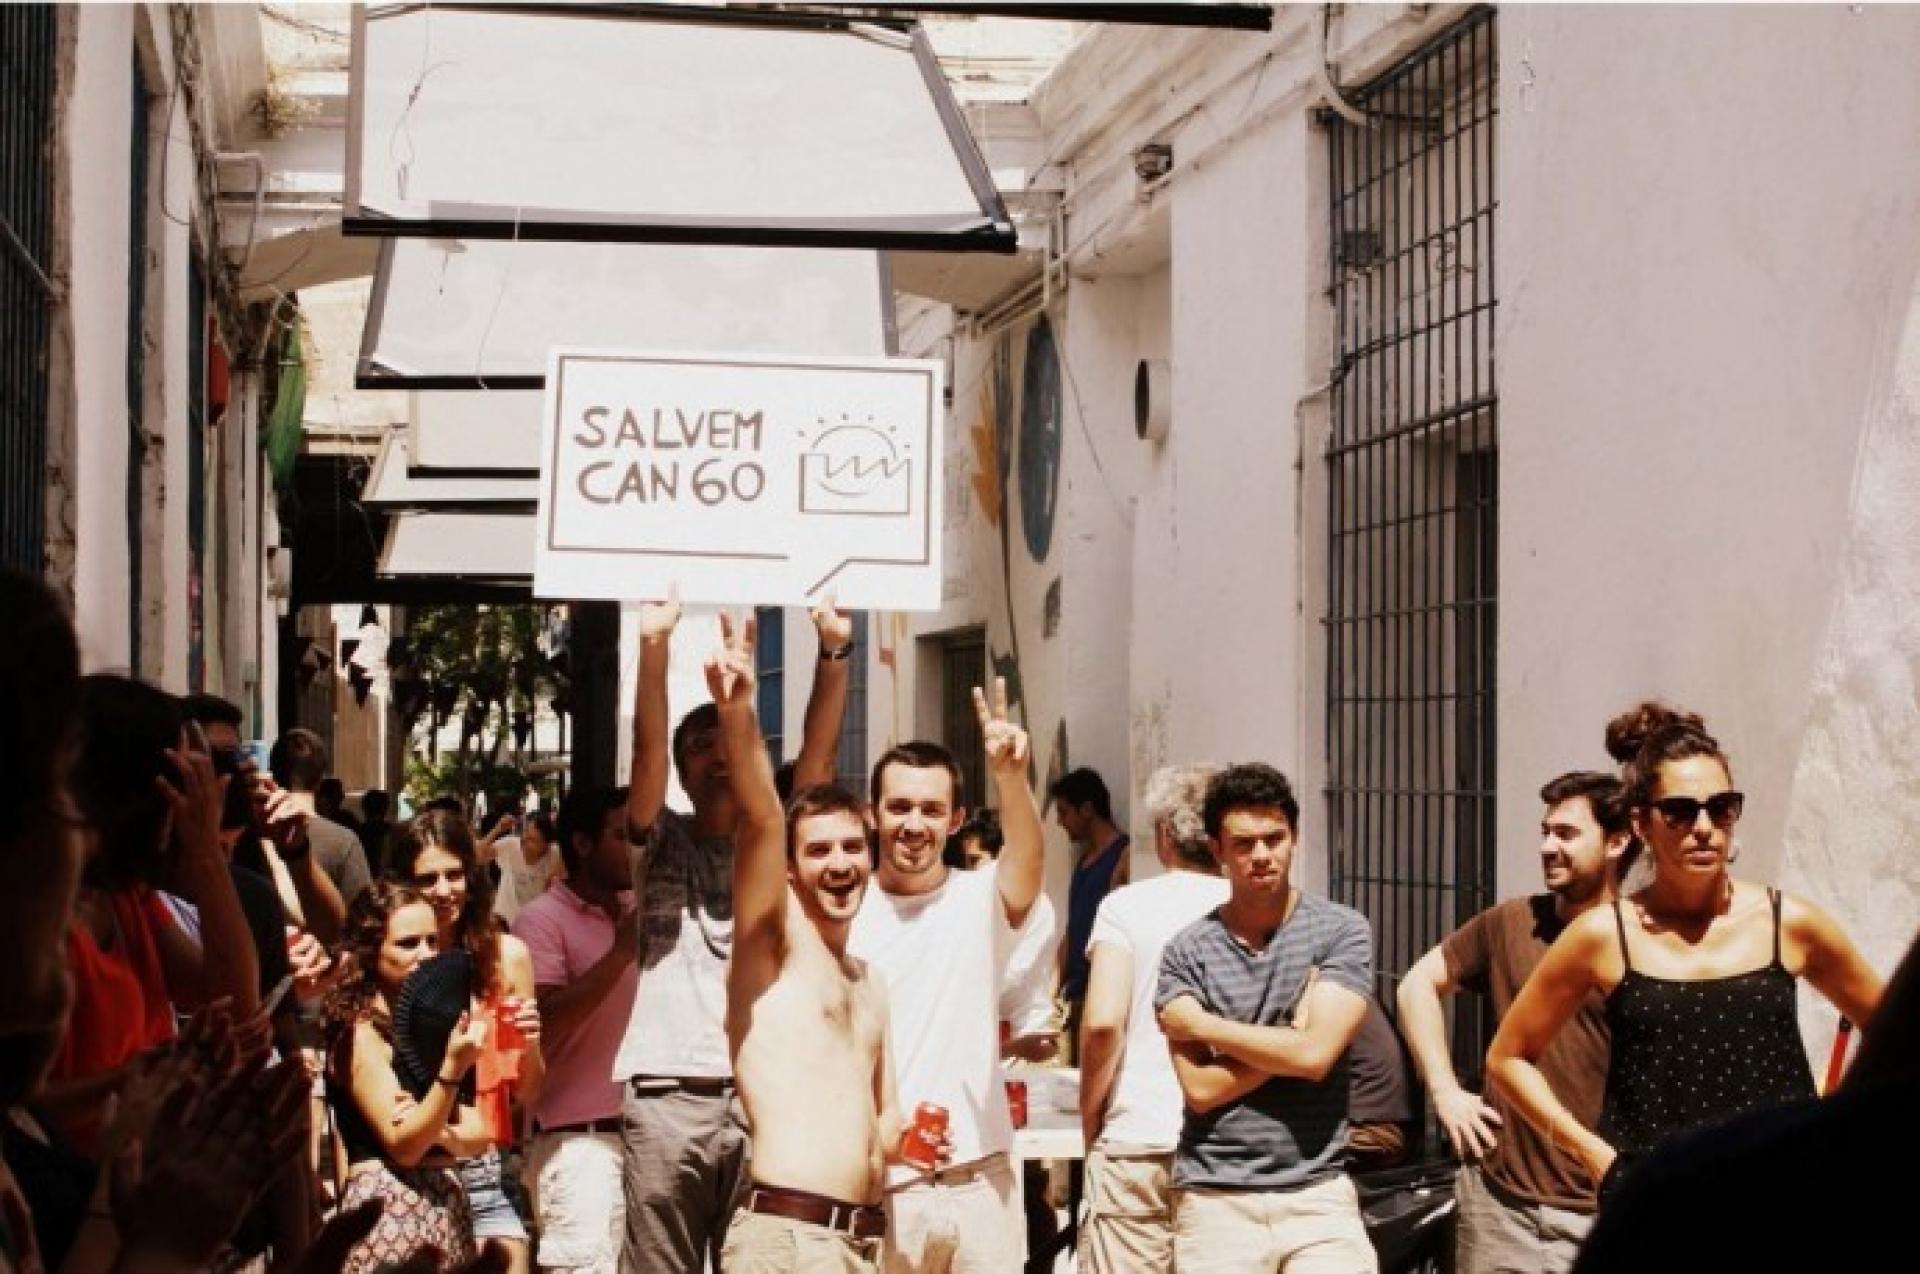 Salvem Can60 action against gentrification | Photo via Arquitectos de Cabecera